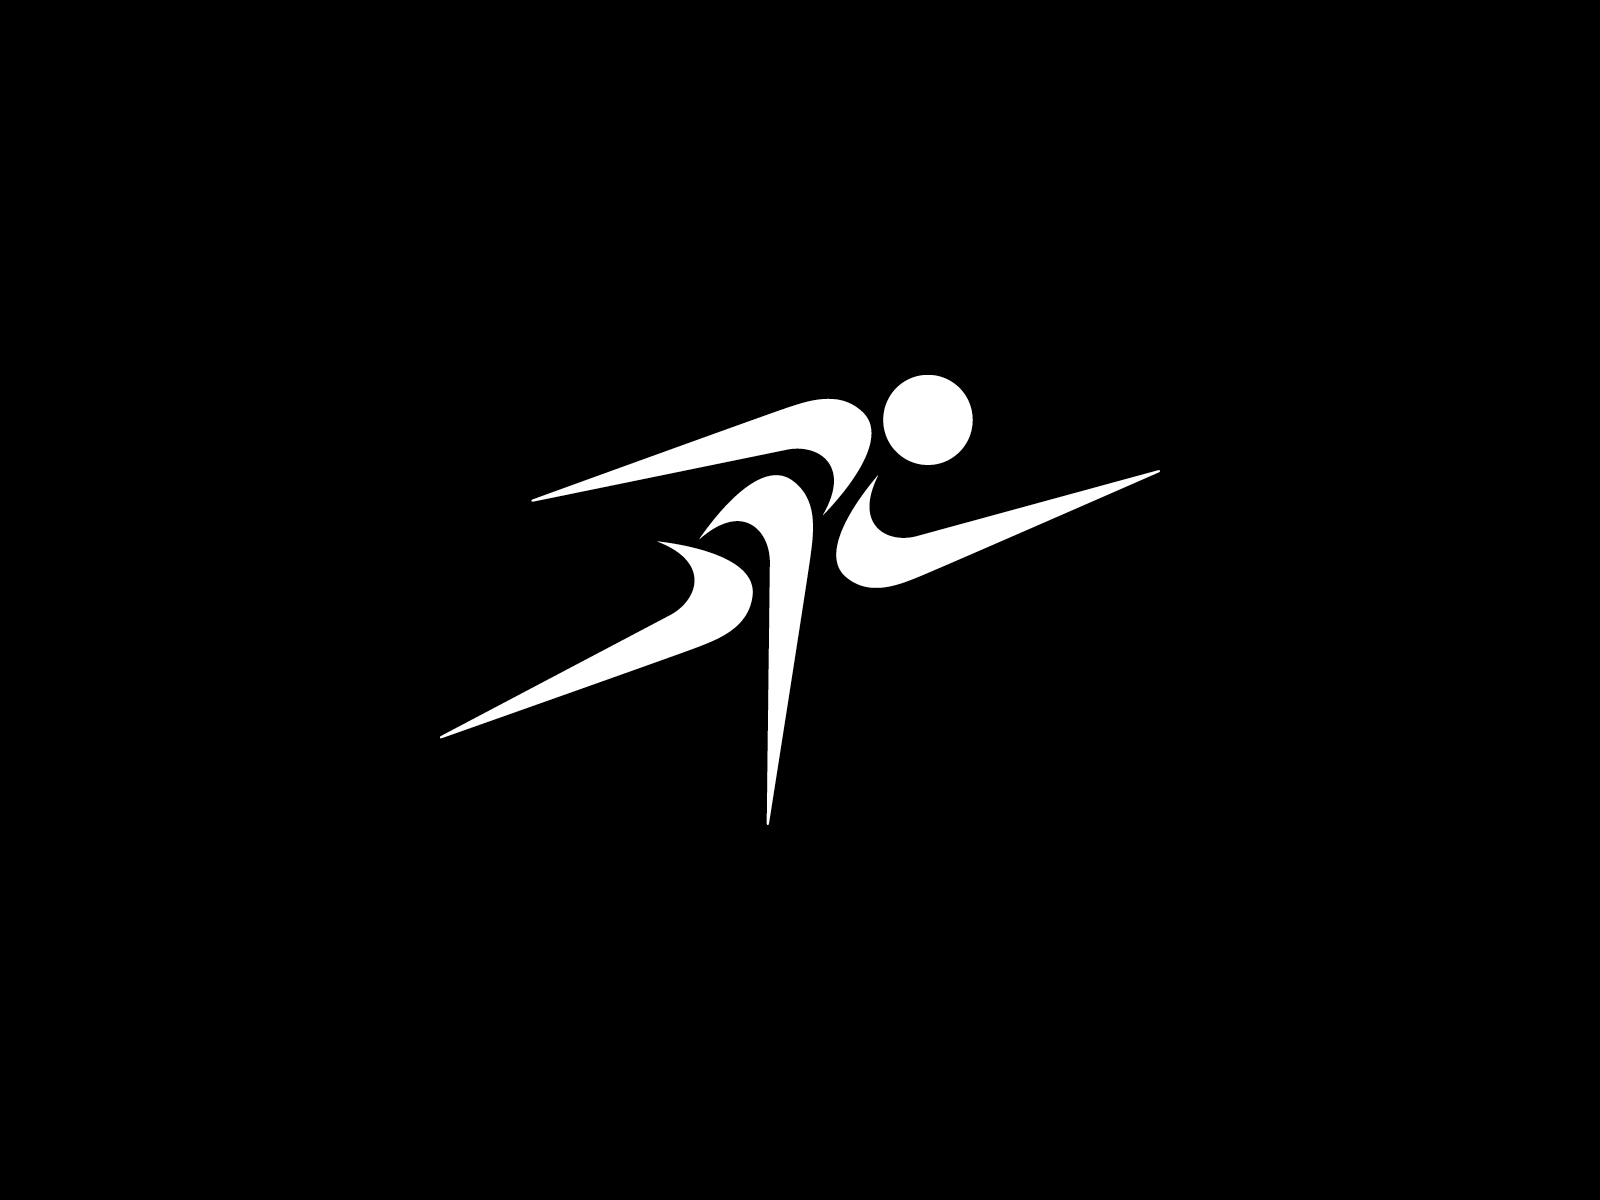 nike running logo